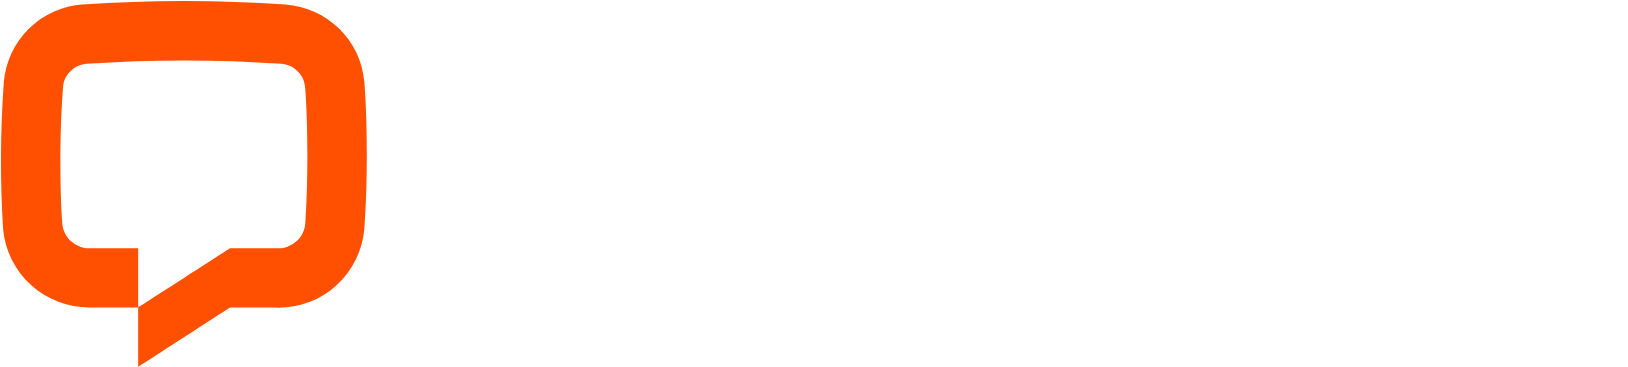 LiveChat Software logo large for dark backgrounds (transparent PNG)